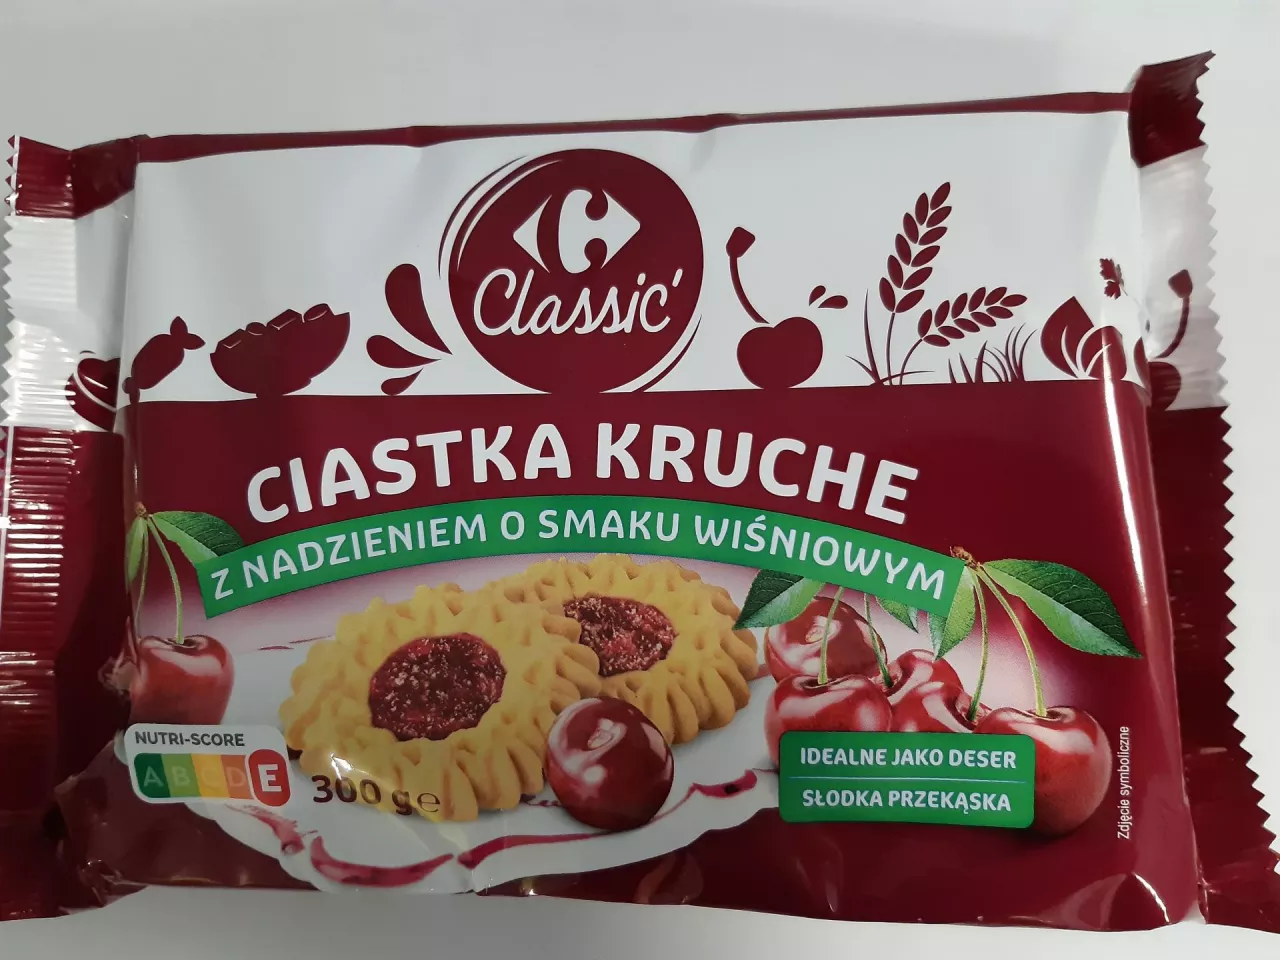 Nowe marki własne w ofercie sieci Carrefour w Polsce (wiadomoscihandlowe.pl)